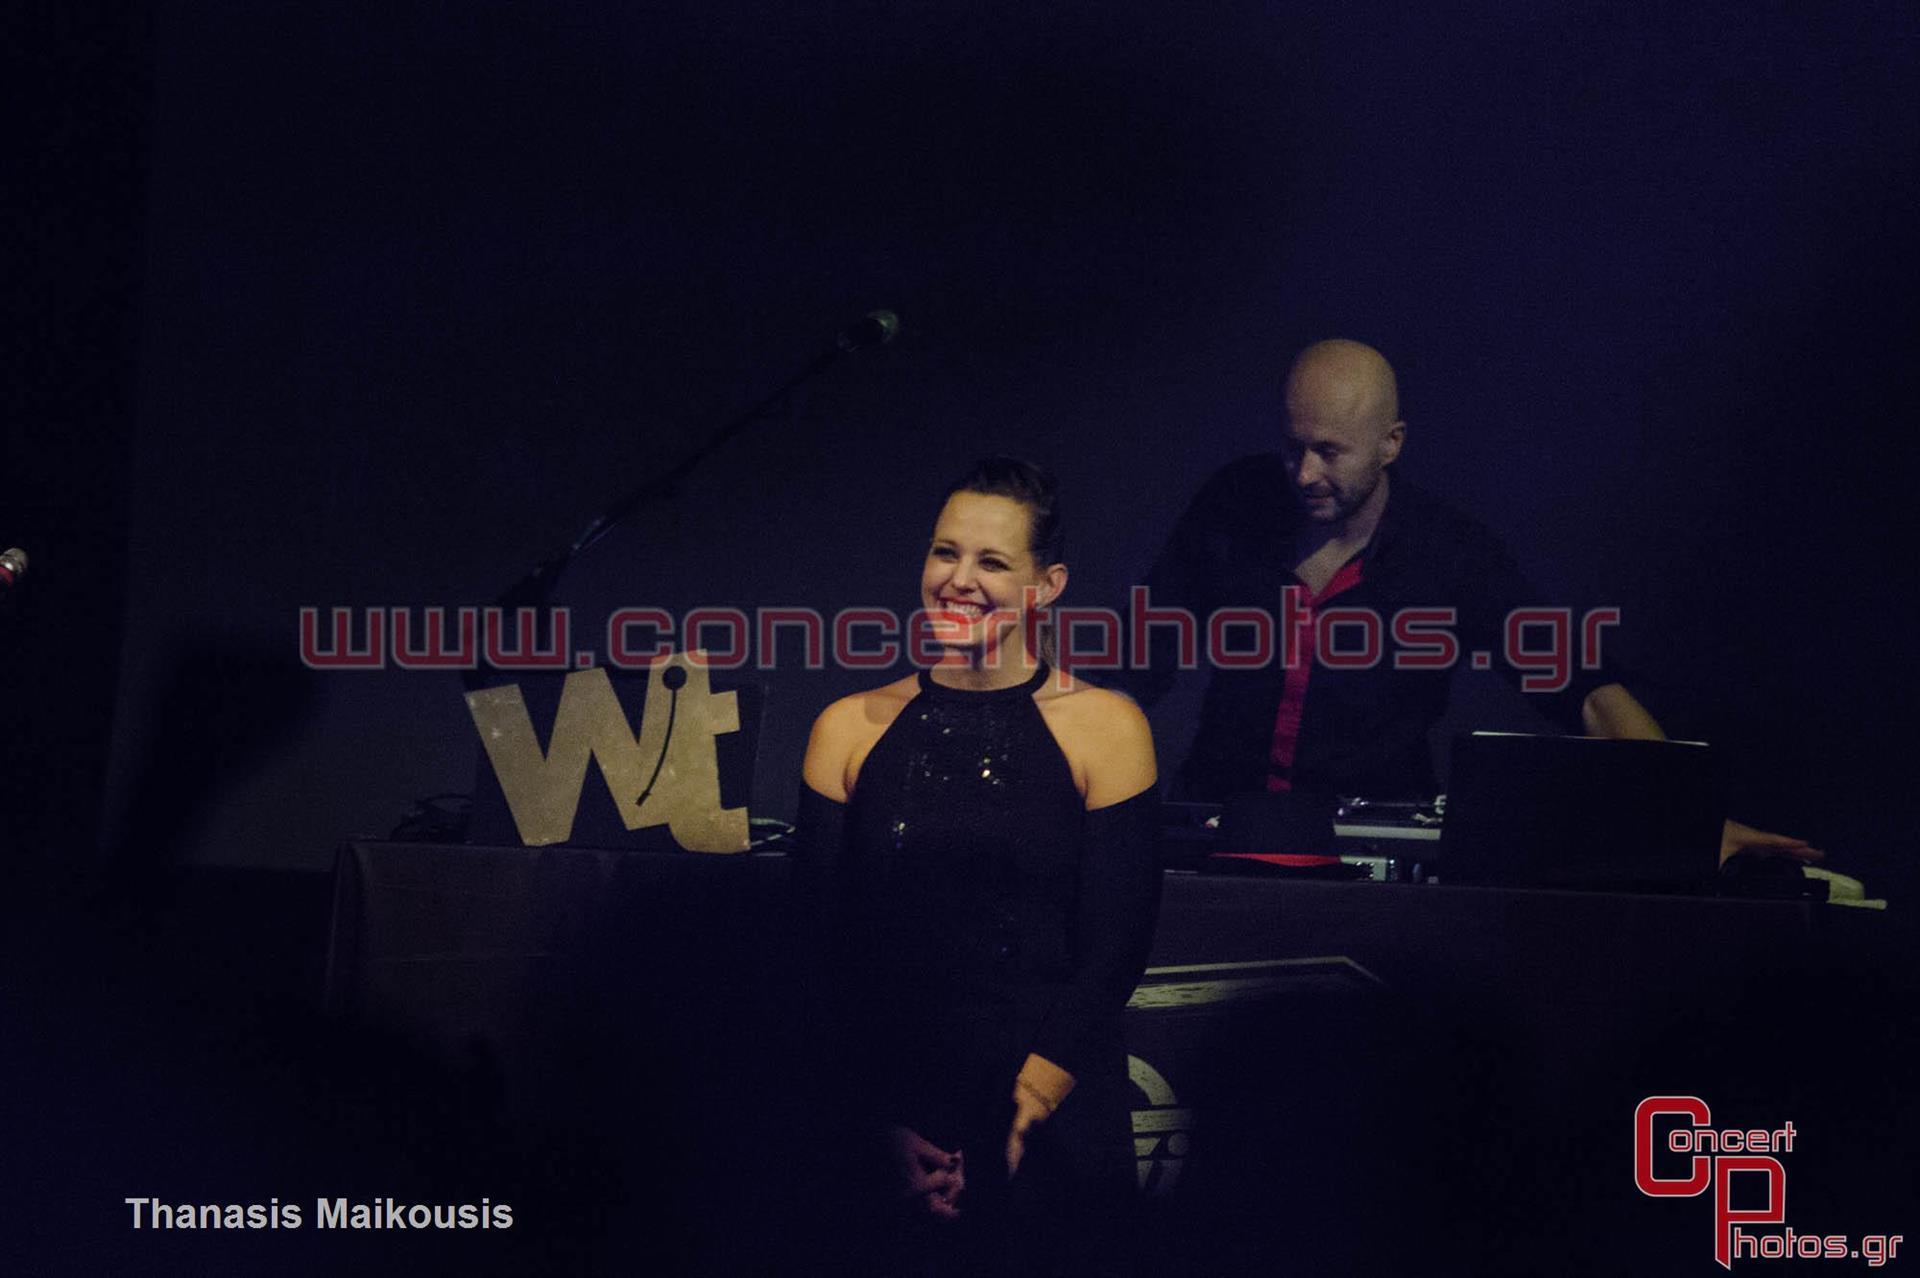 Wax Tailor - photographer: Thanasis Maikousis - ConcertPhotos-7916